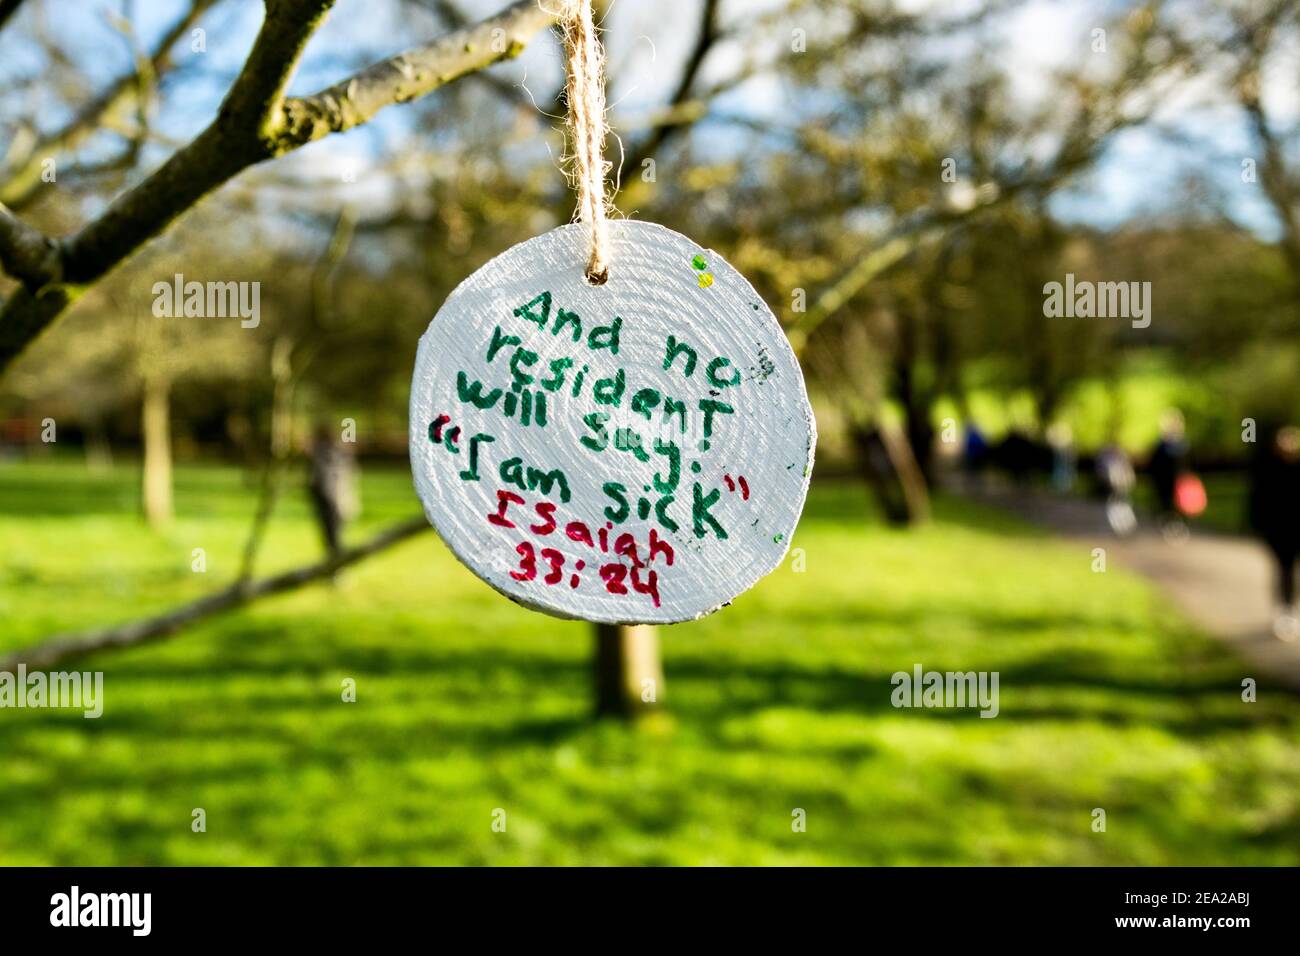 Un ornement suspendu d'un arbre dans la branche publique avec une citation de la bible du Livre d'Ésaïe: Aucun résident ne dira Je suis malade. Concernant covid19 Royaume-Uni Banque D'Images